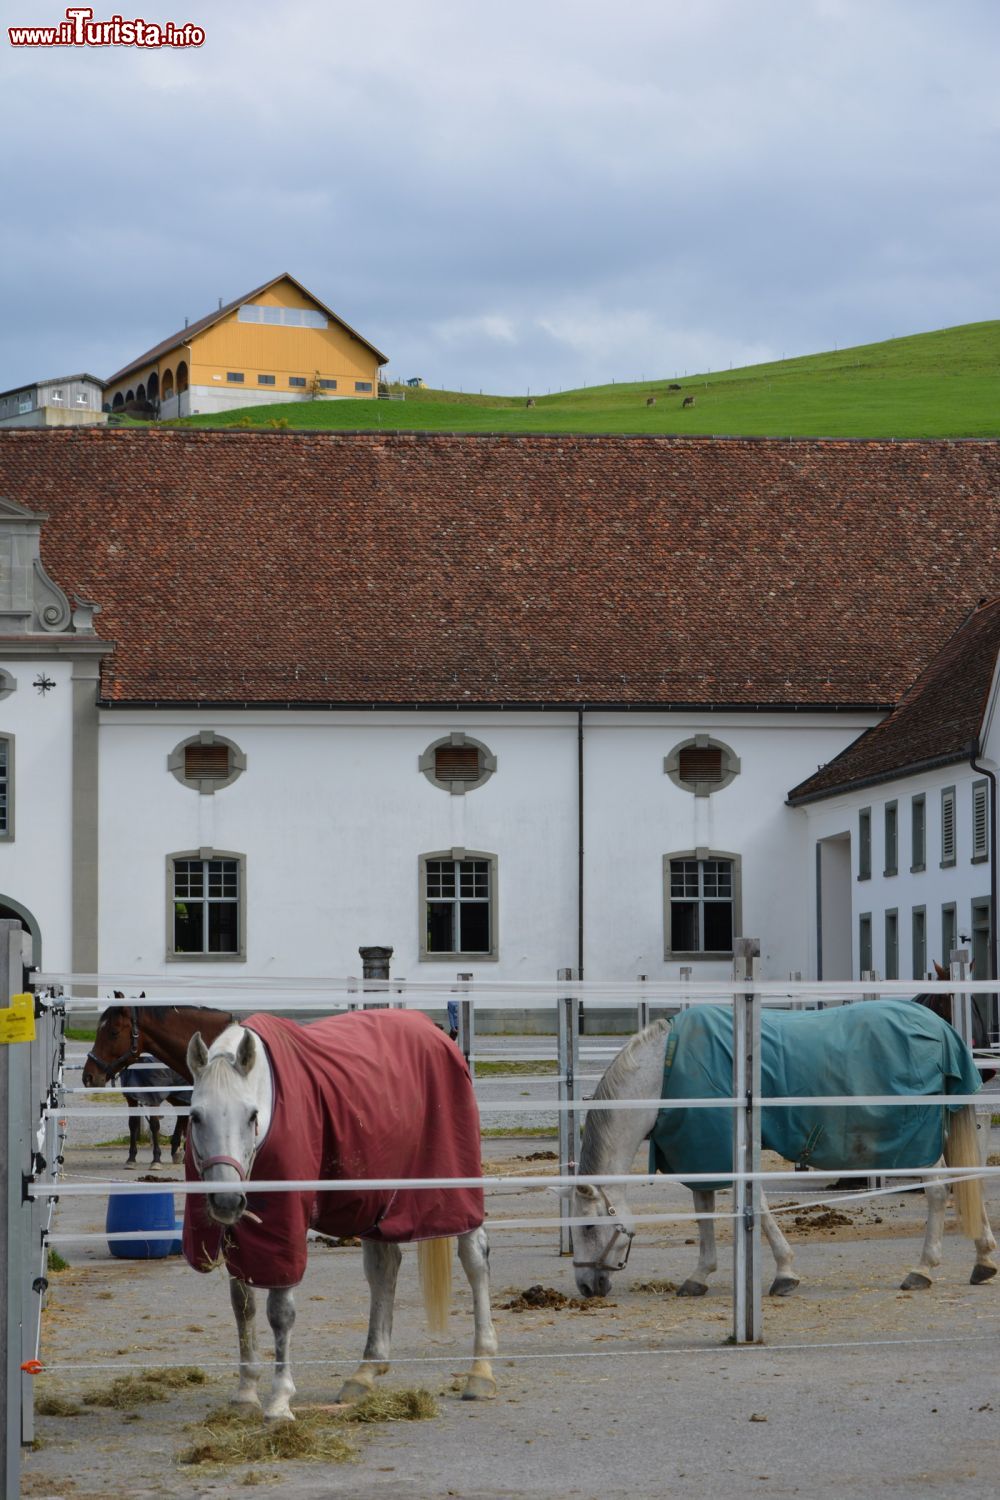 Immagine Cavalli nei recinti all'aperto dell'abbazia territoriale di Einsiedeln, Canton Svitto, Svizzera.